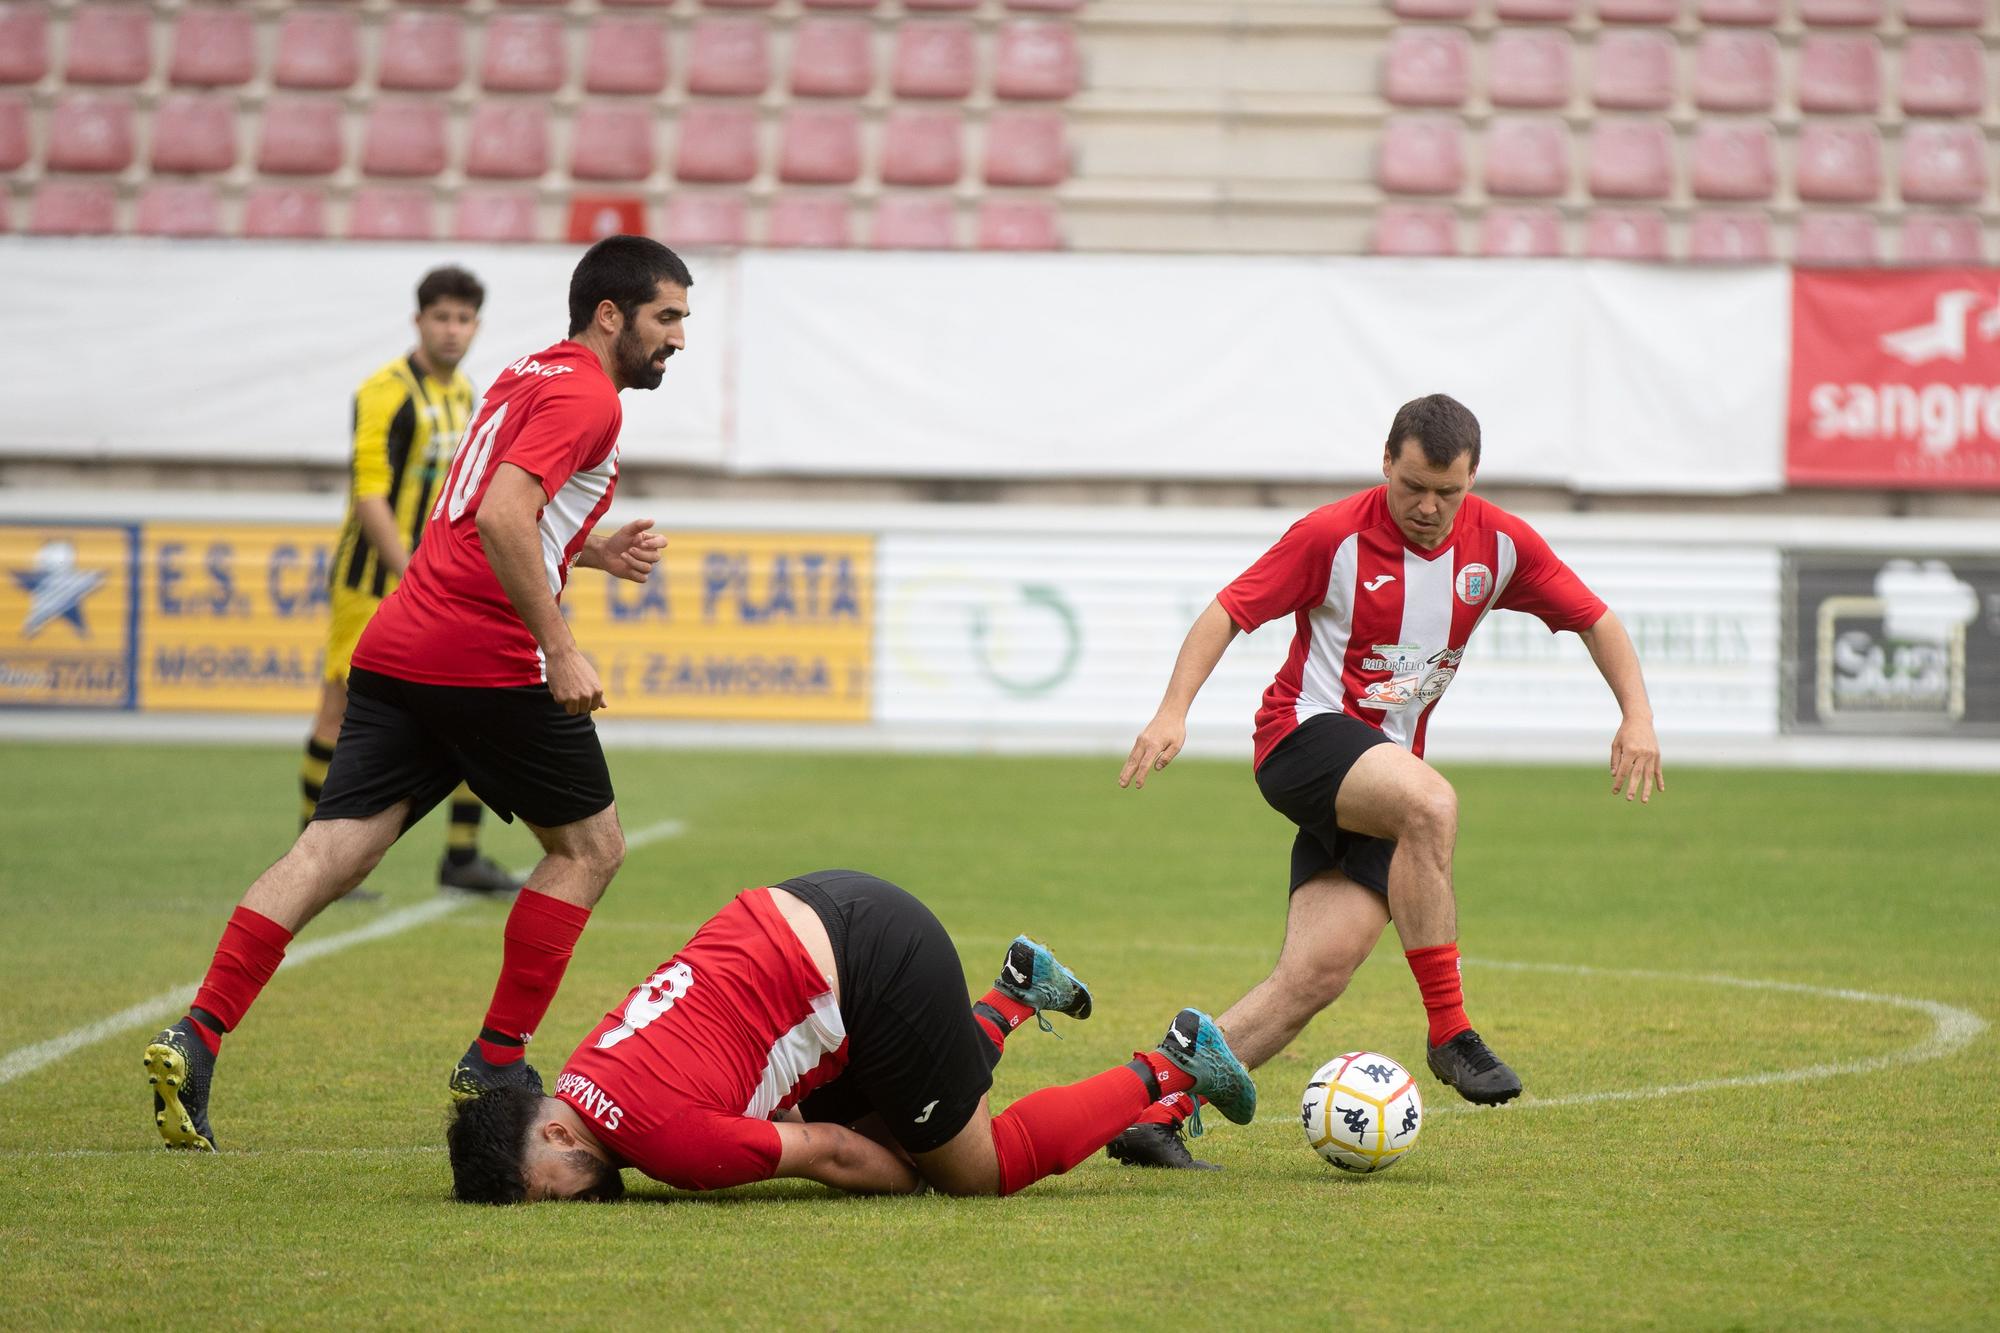 GALERIA | El Moraleja CF levanta la Copa de Los Valles ante Sanabria